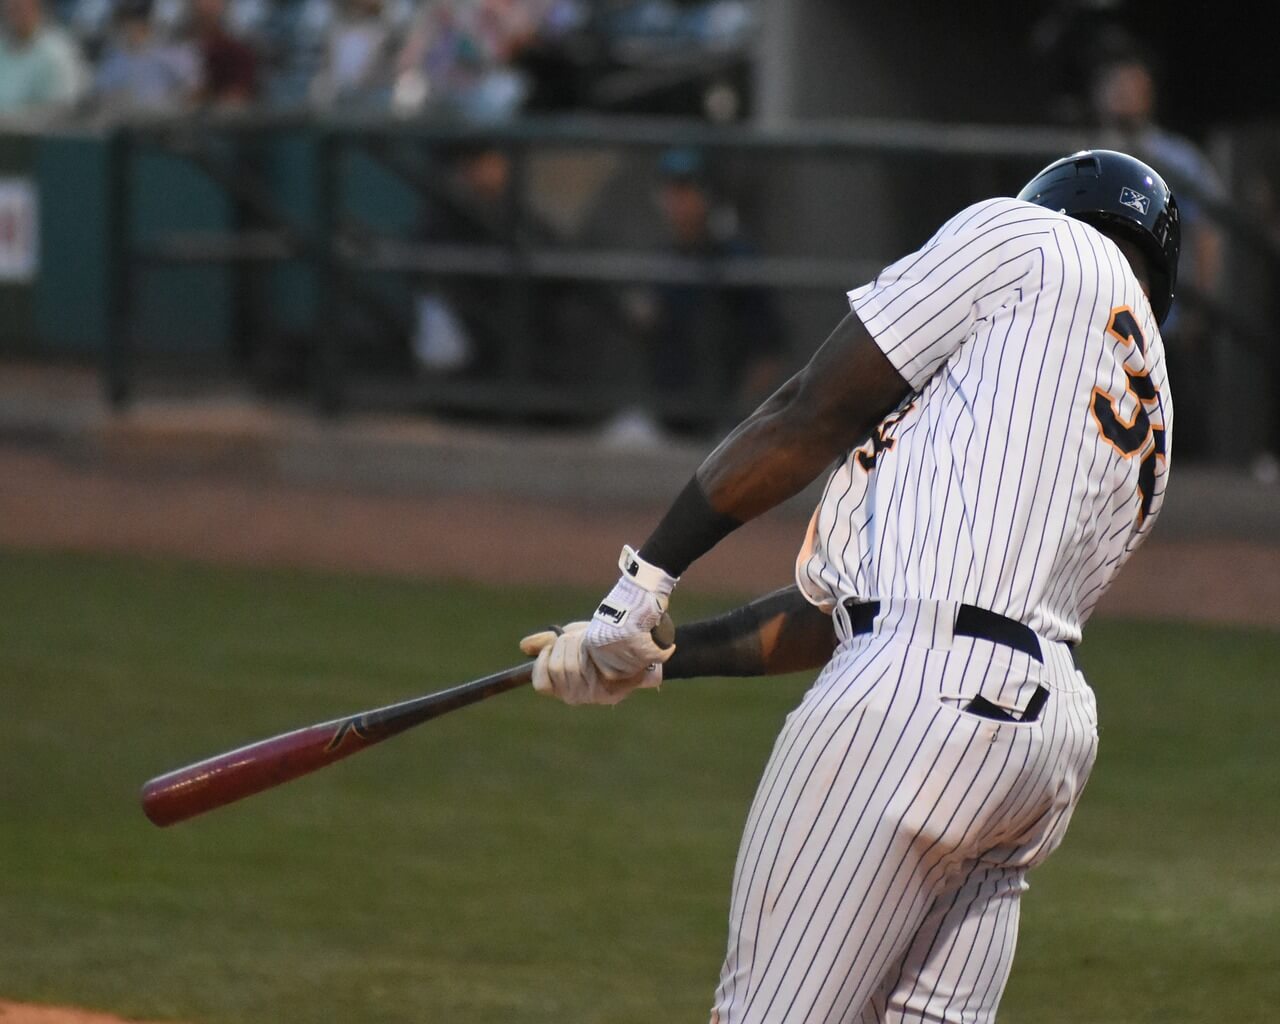 Man swinging a bat and wearing a baseball jersey